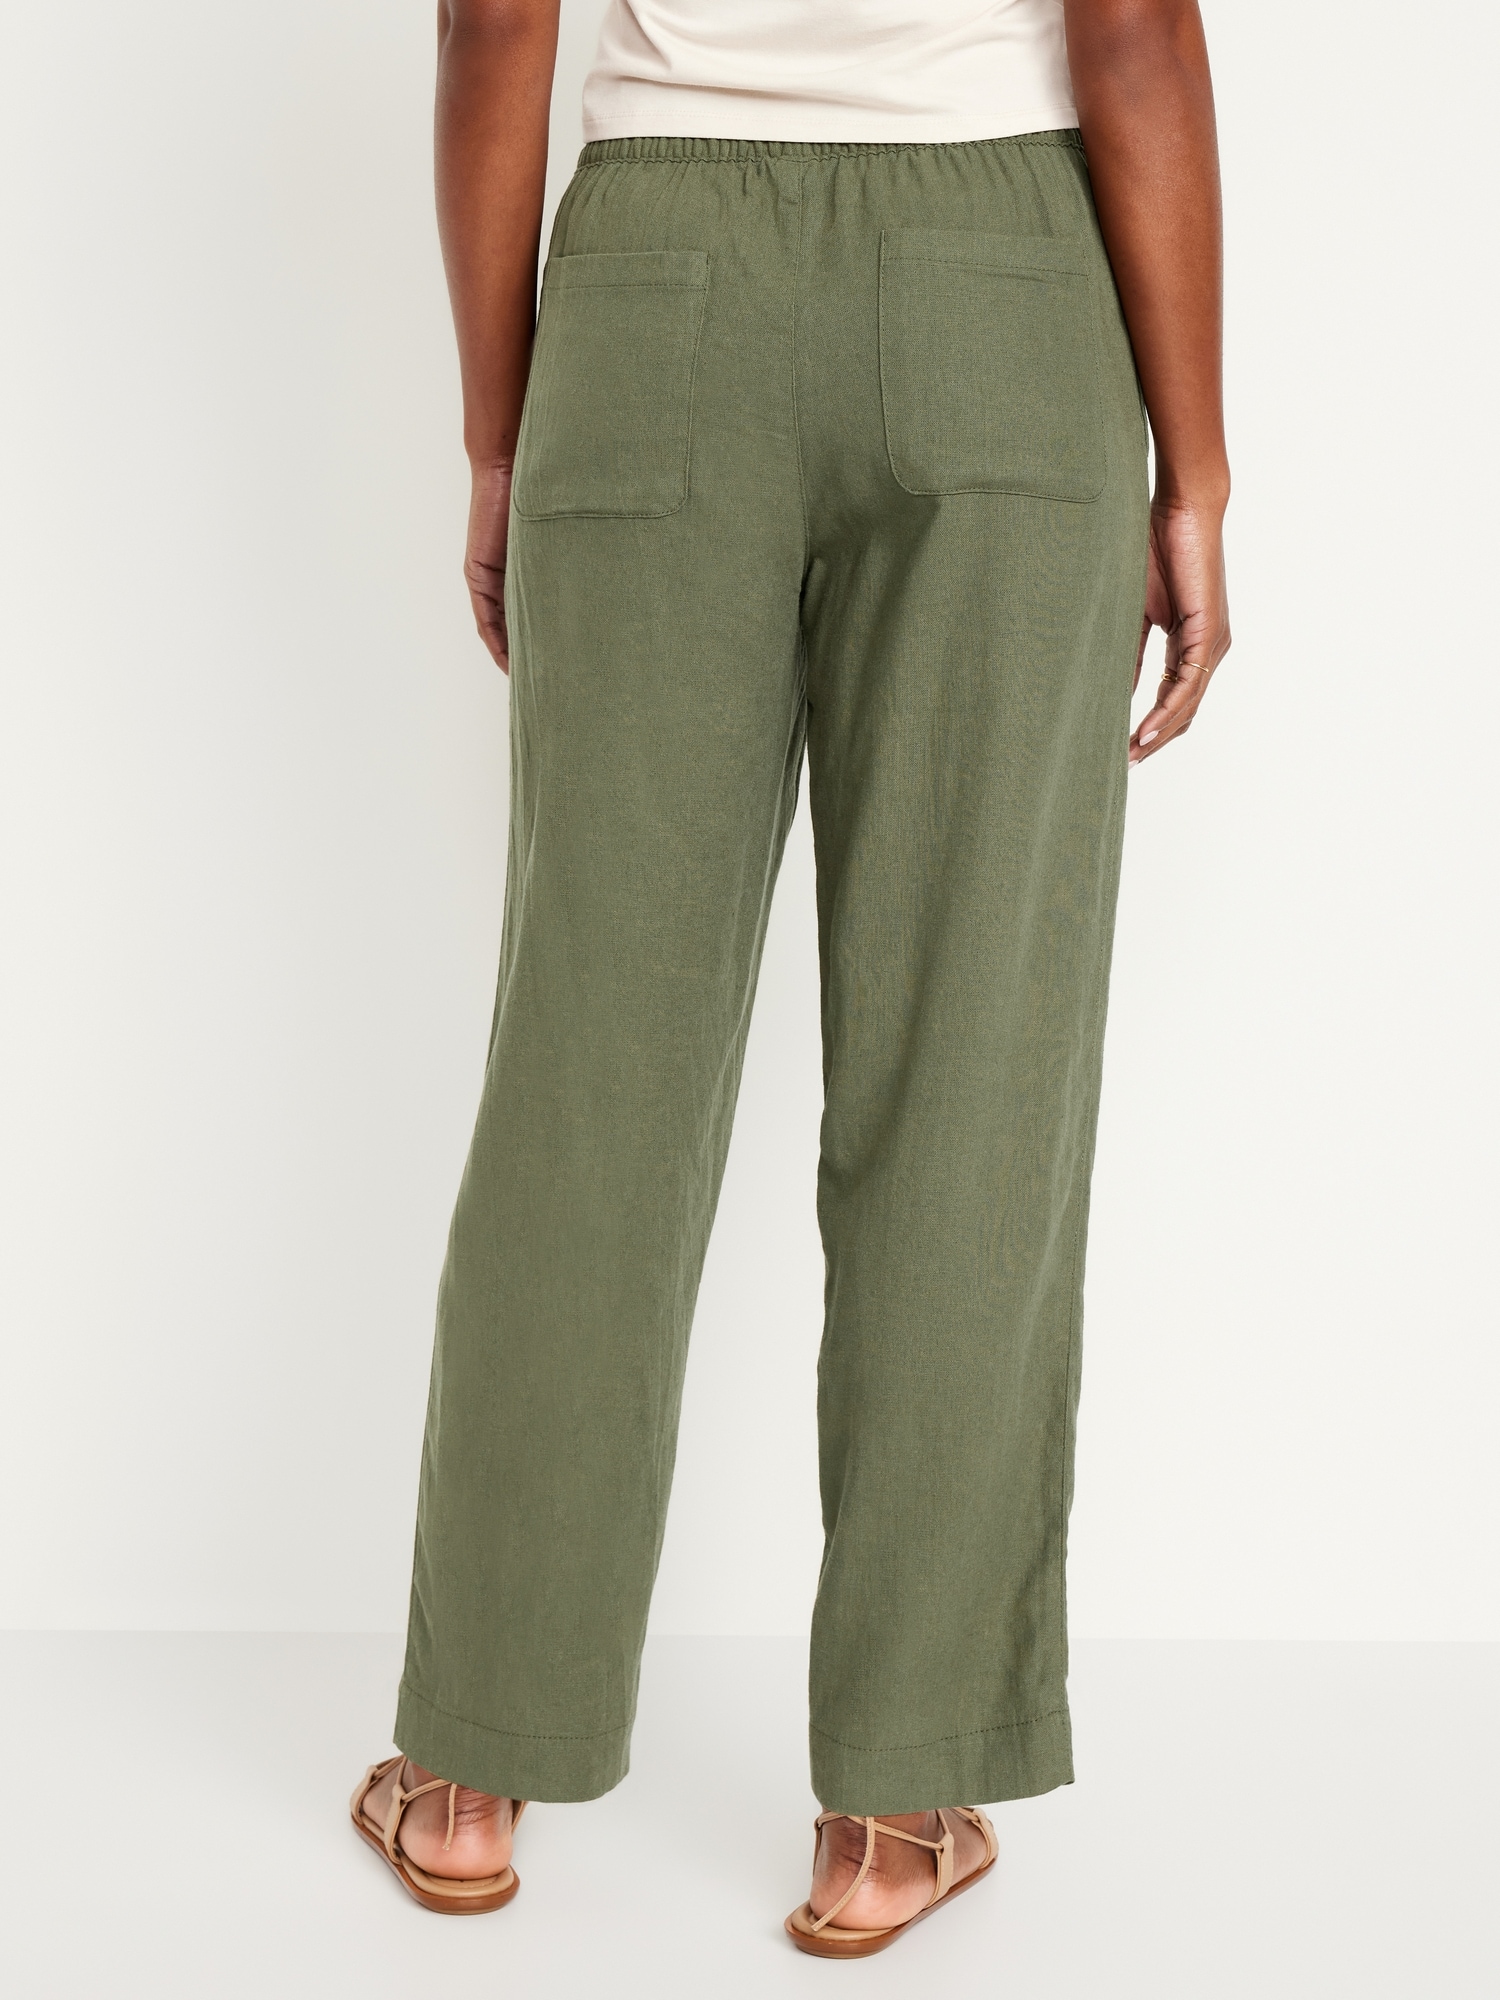 Straight-leg linen blend pants with an elastic waist